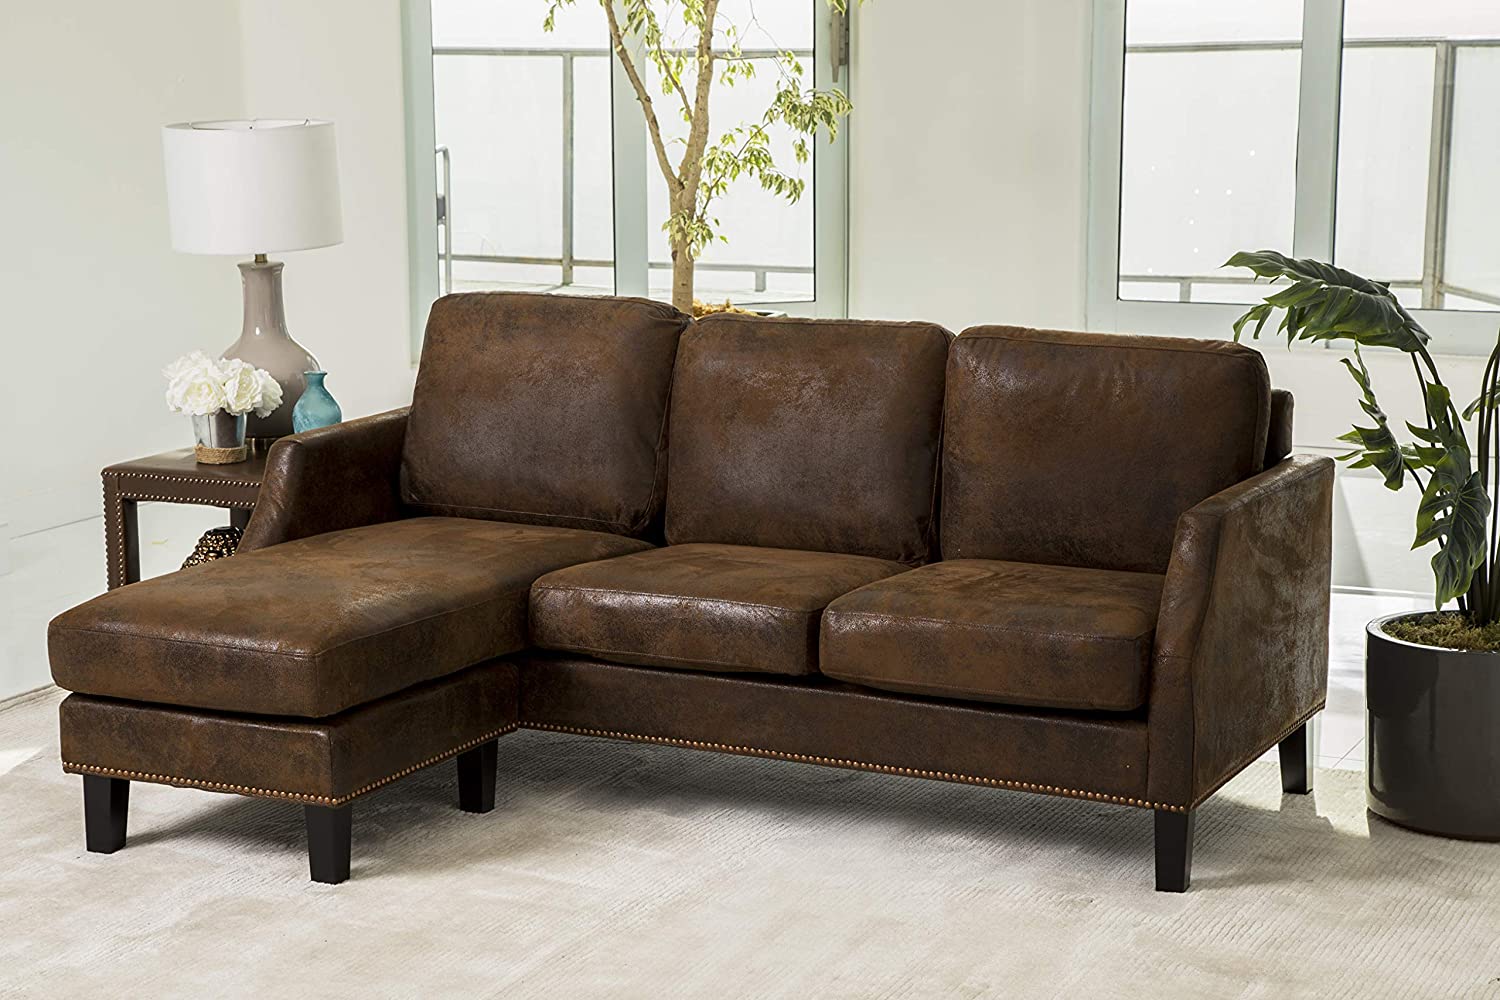 faux leather sofa good or bad